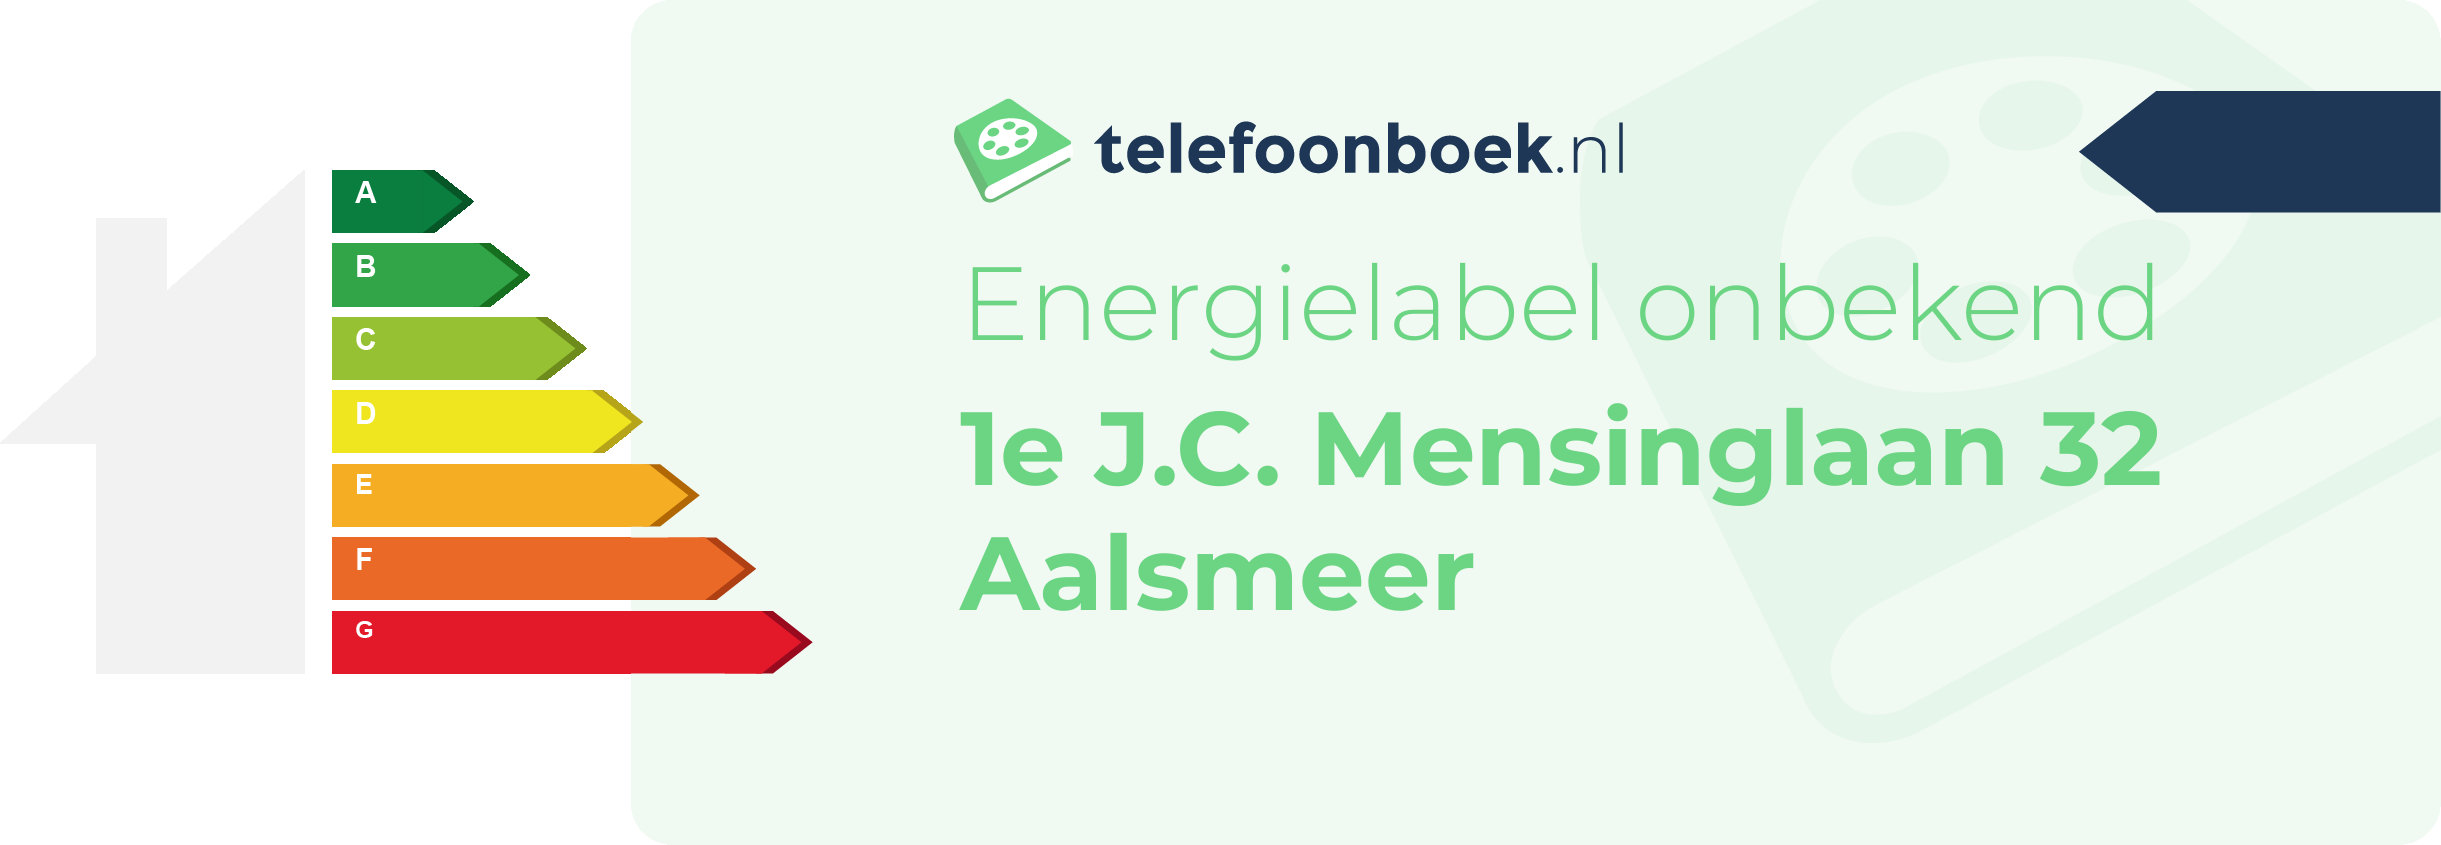 Energielabel 1e J.C. Mensinglaan 32 Aalsmeer